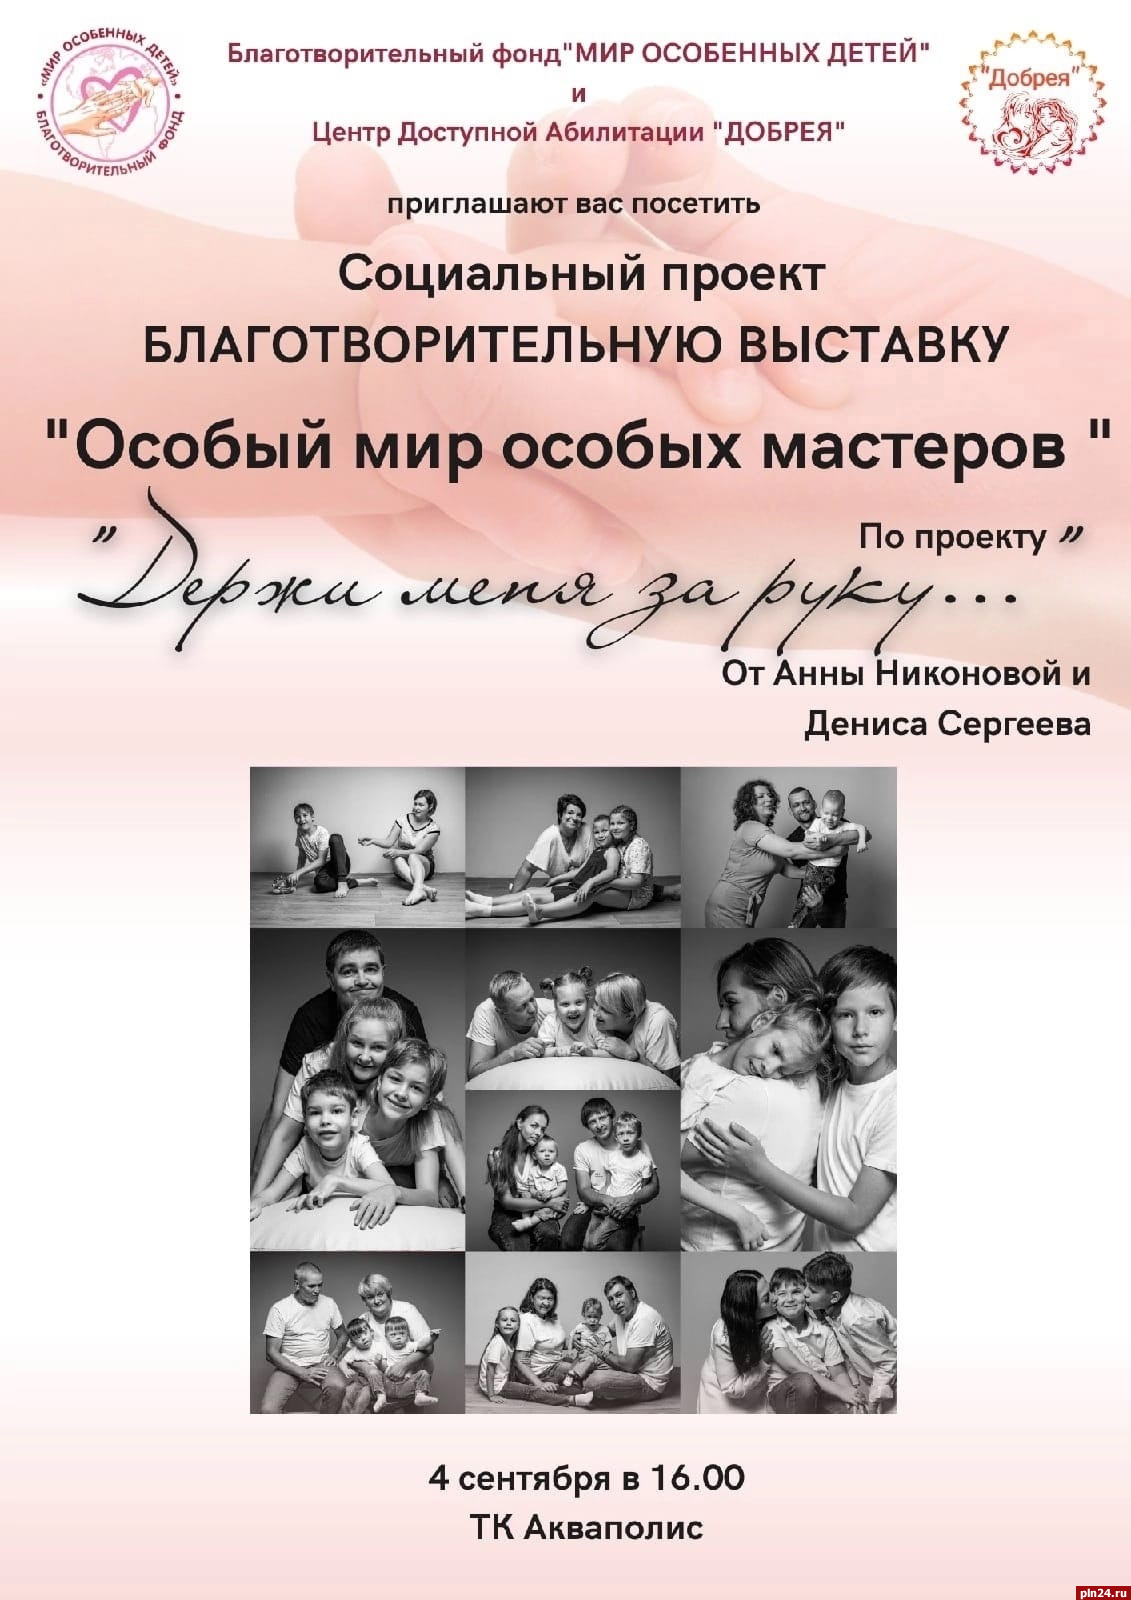 Фотовыставка о семьях с особенными детьми откроется в Пскове 4 сентября